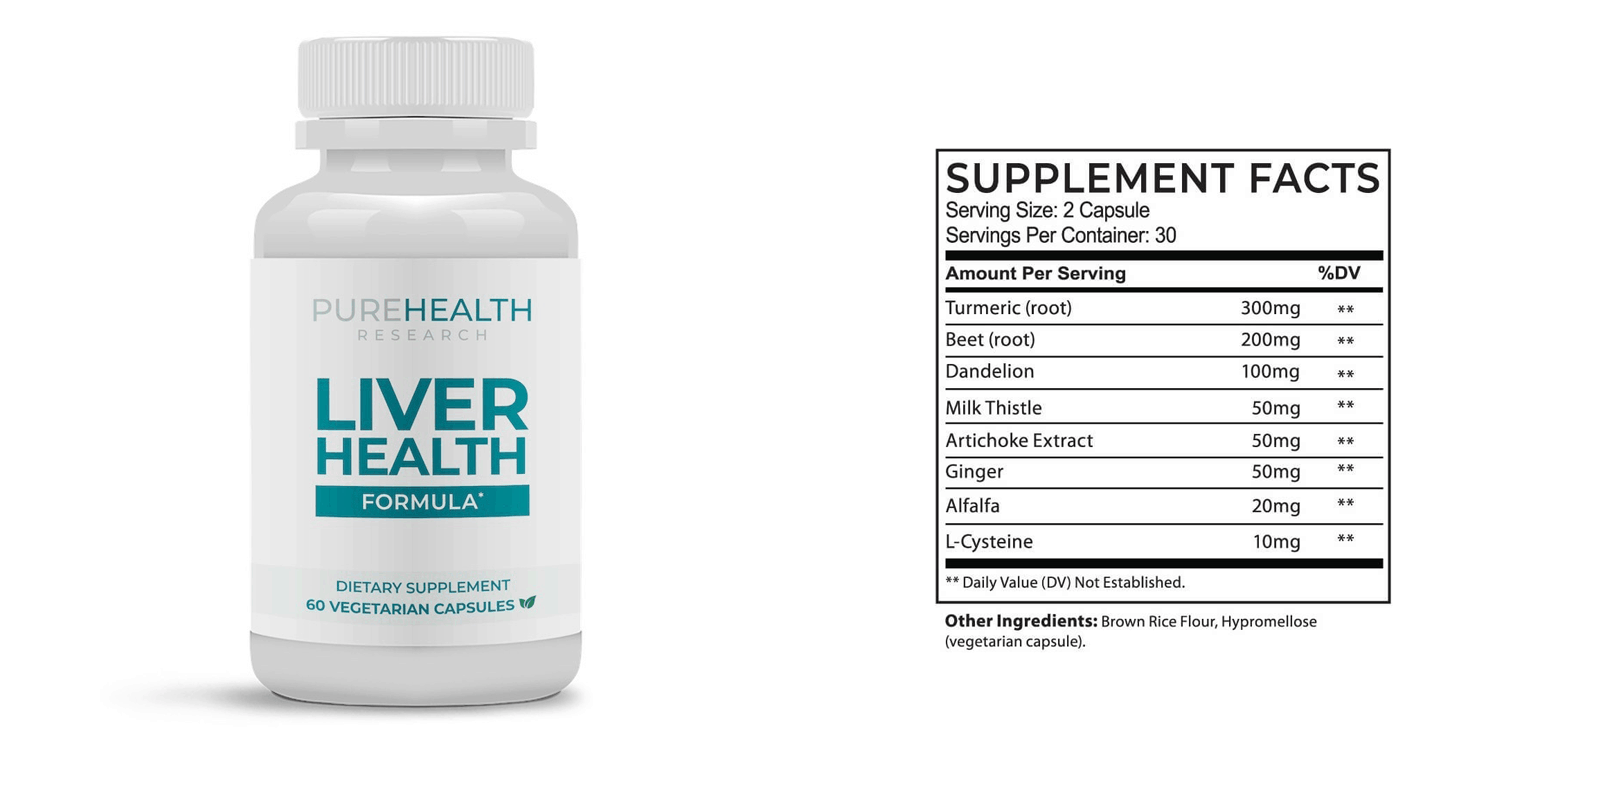 Liver Health Formula dosage